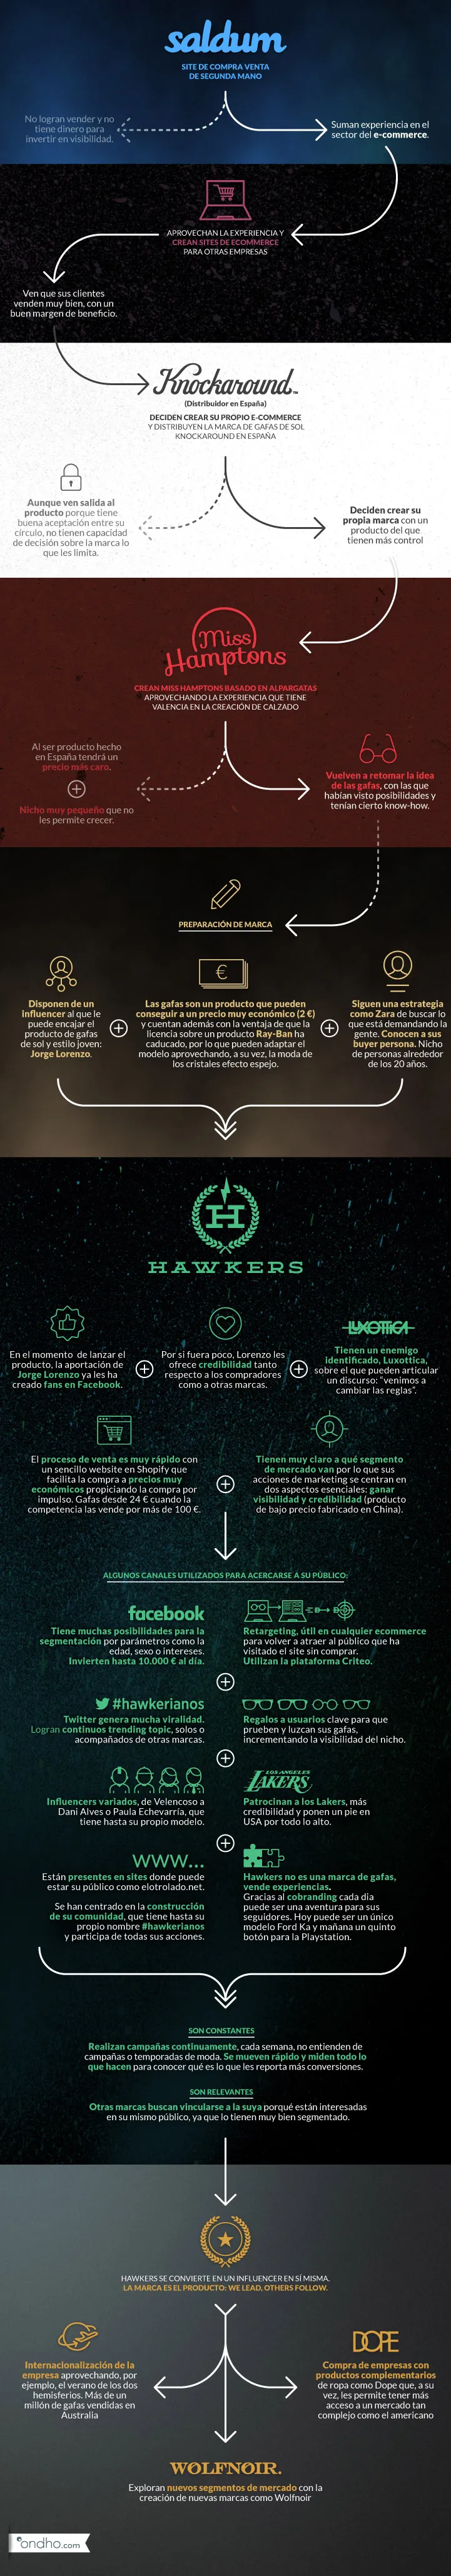 Infografia historia Hawkers